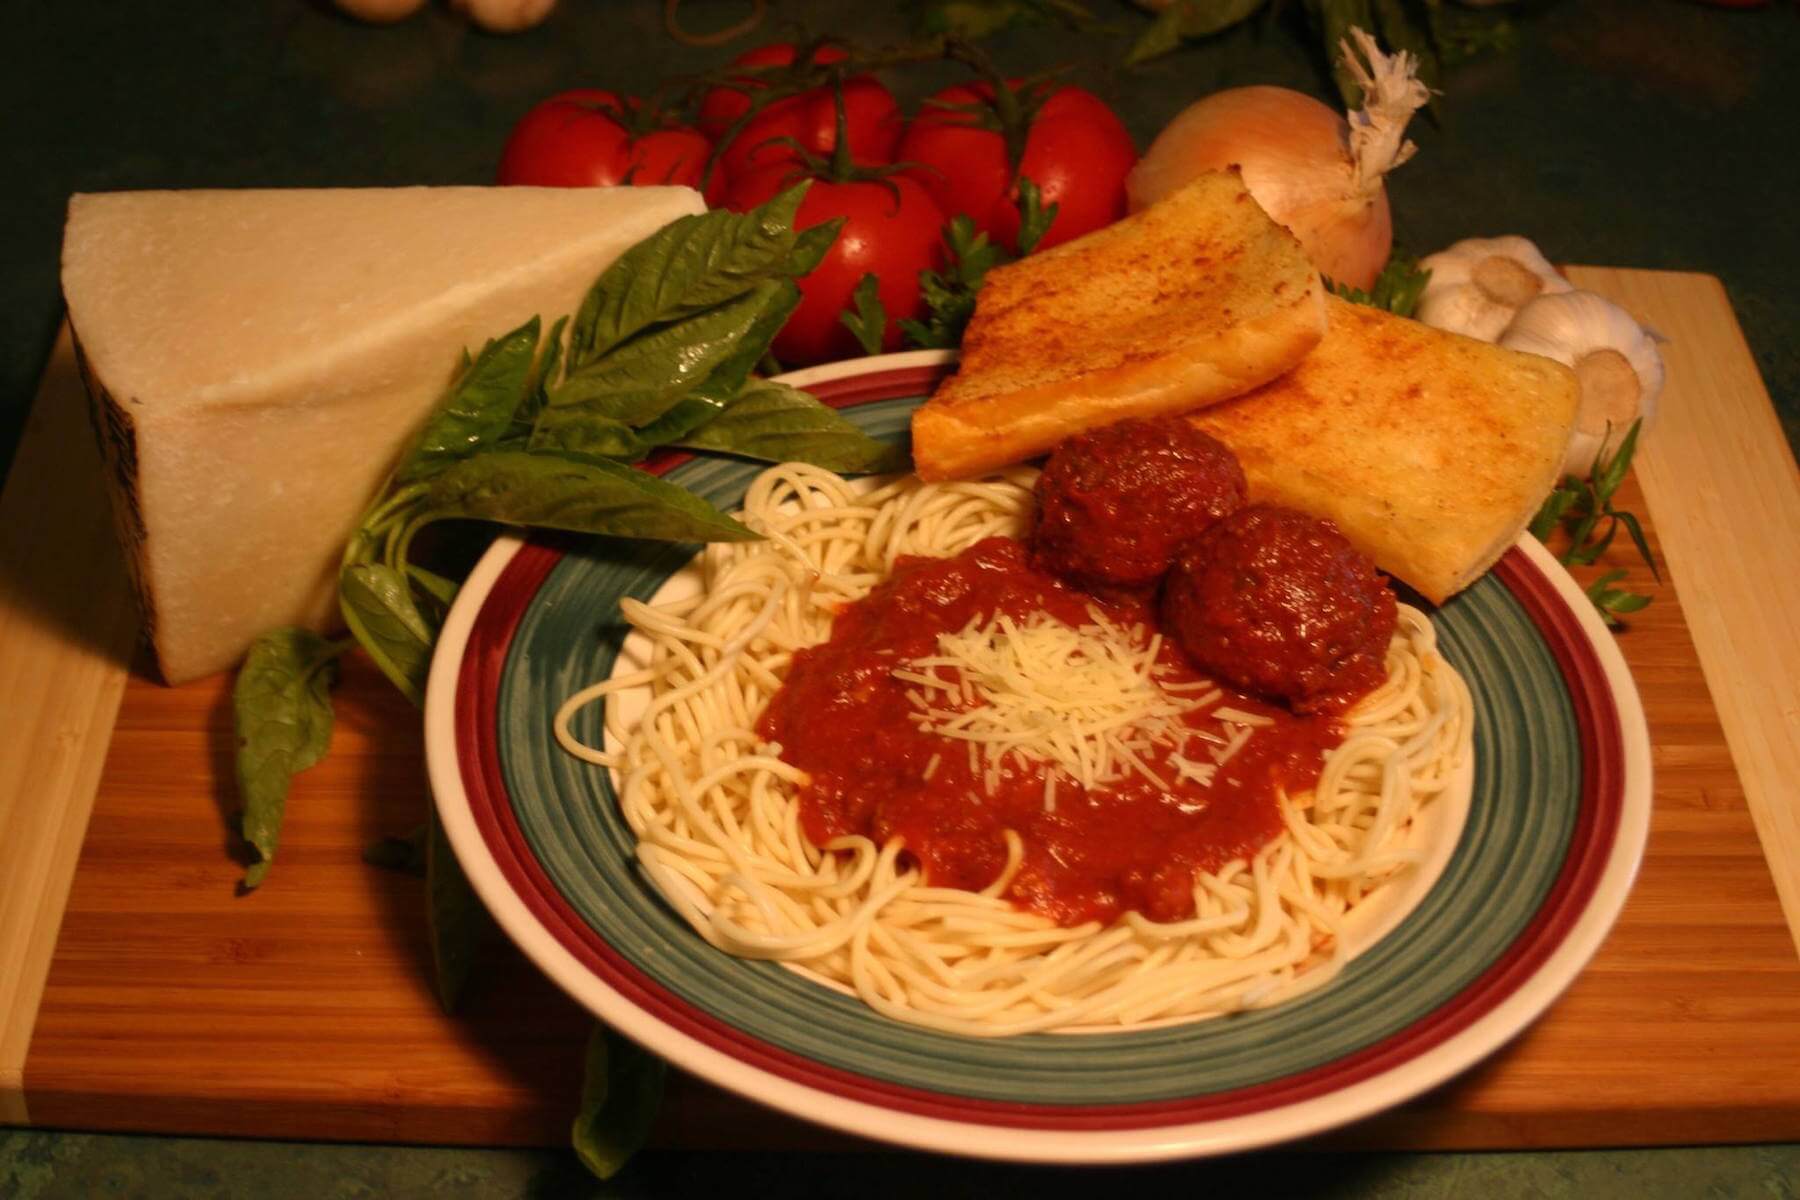 Spaghetti and meatballs and garlic bread